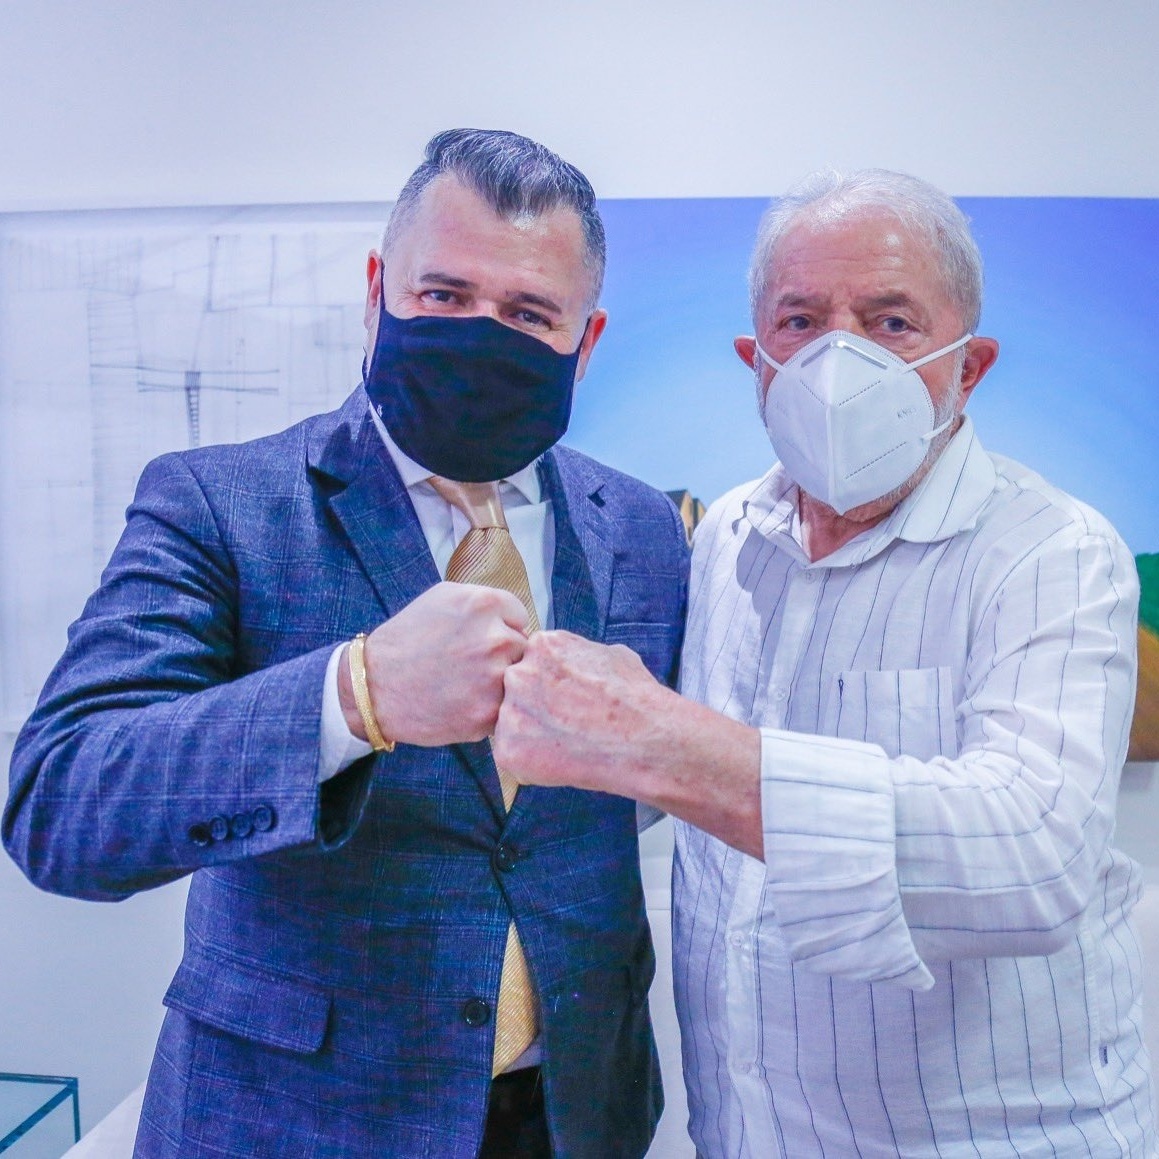 Pastor evangélico que pediu para Deus quebrar a mandíbula de Lula será  investigado pela PF